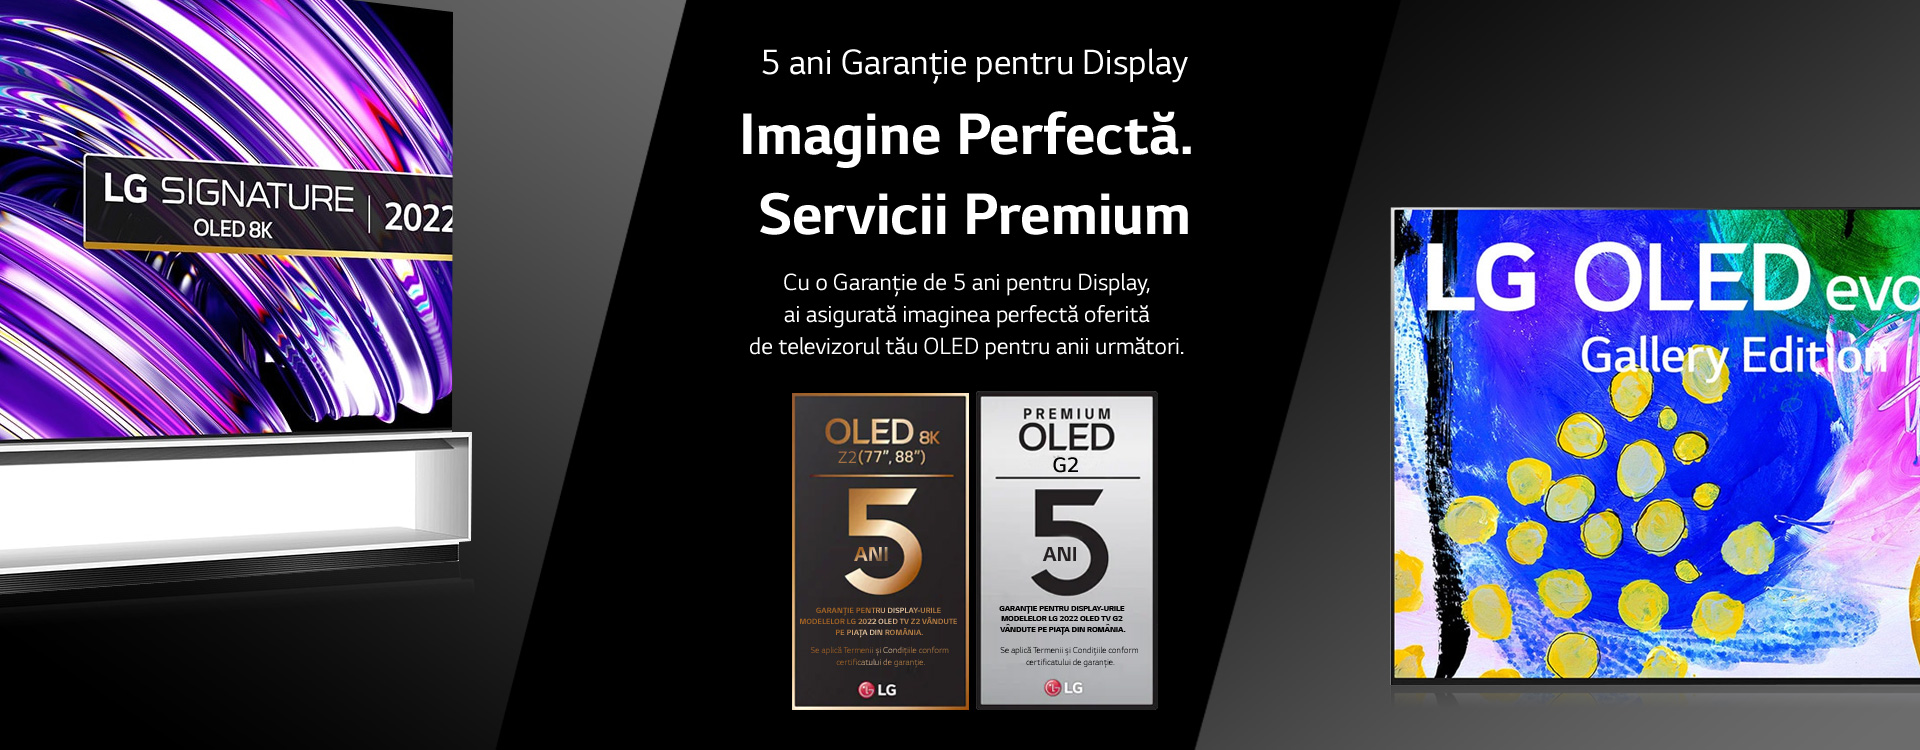 5 ani garanție LG OLEG TV